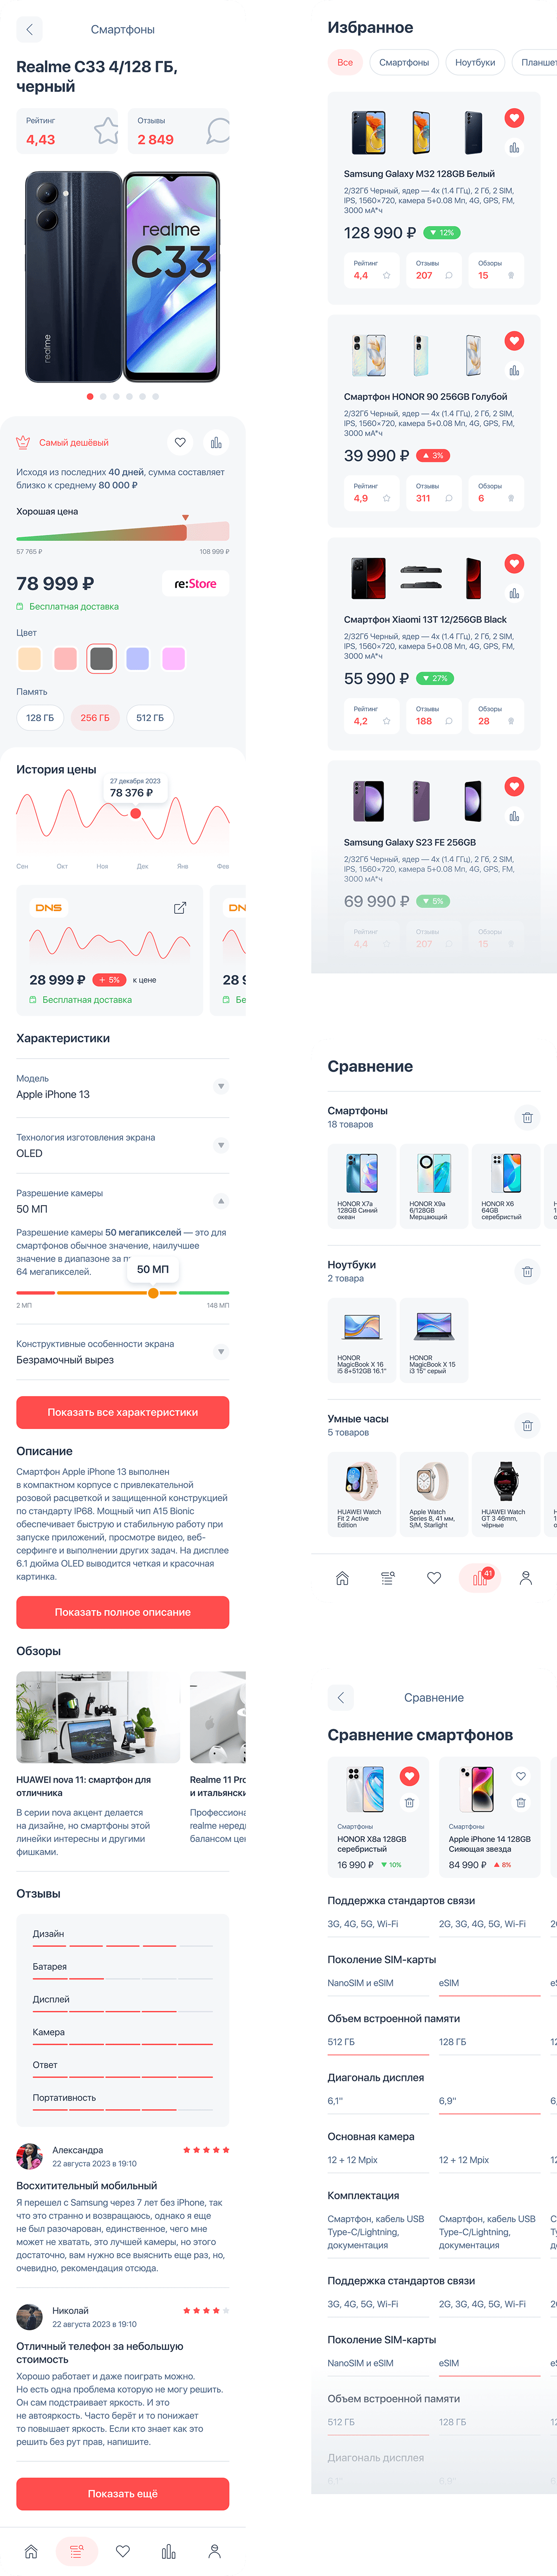 app mobile shop store Ecommerce light comparison Gadget price sale